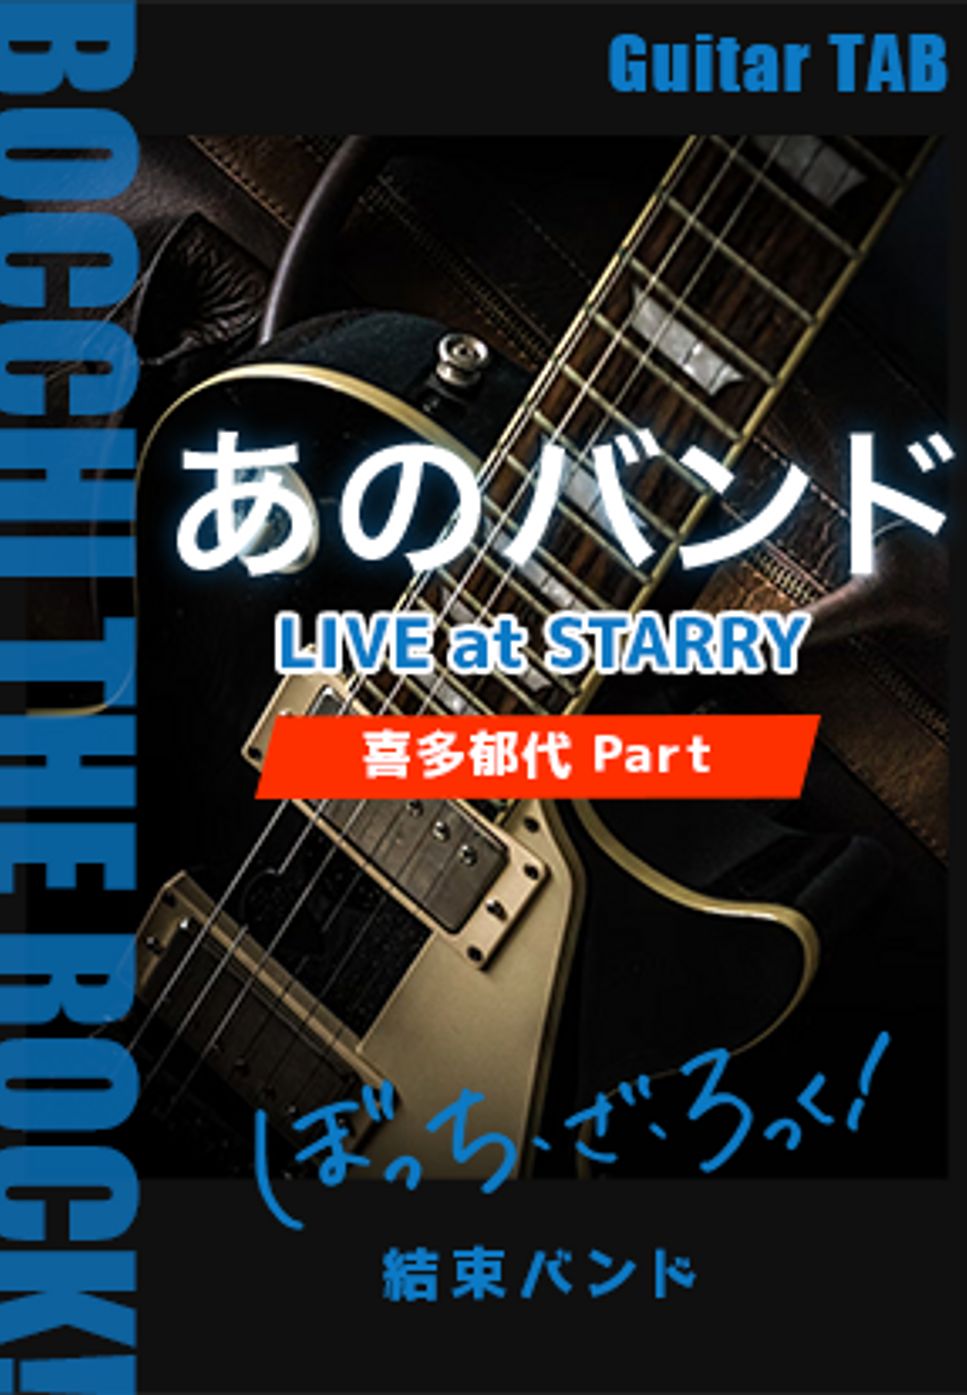 結束バンド - あのバンド (LIVE at STARRY/Gt.喜多郁代Part/ぼっち・ざ・ろっく！) by キリギリス